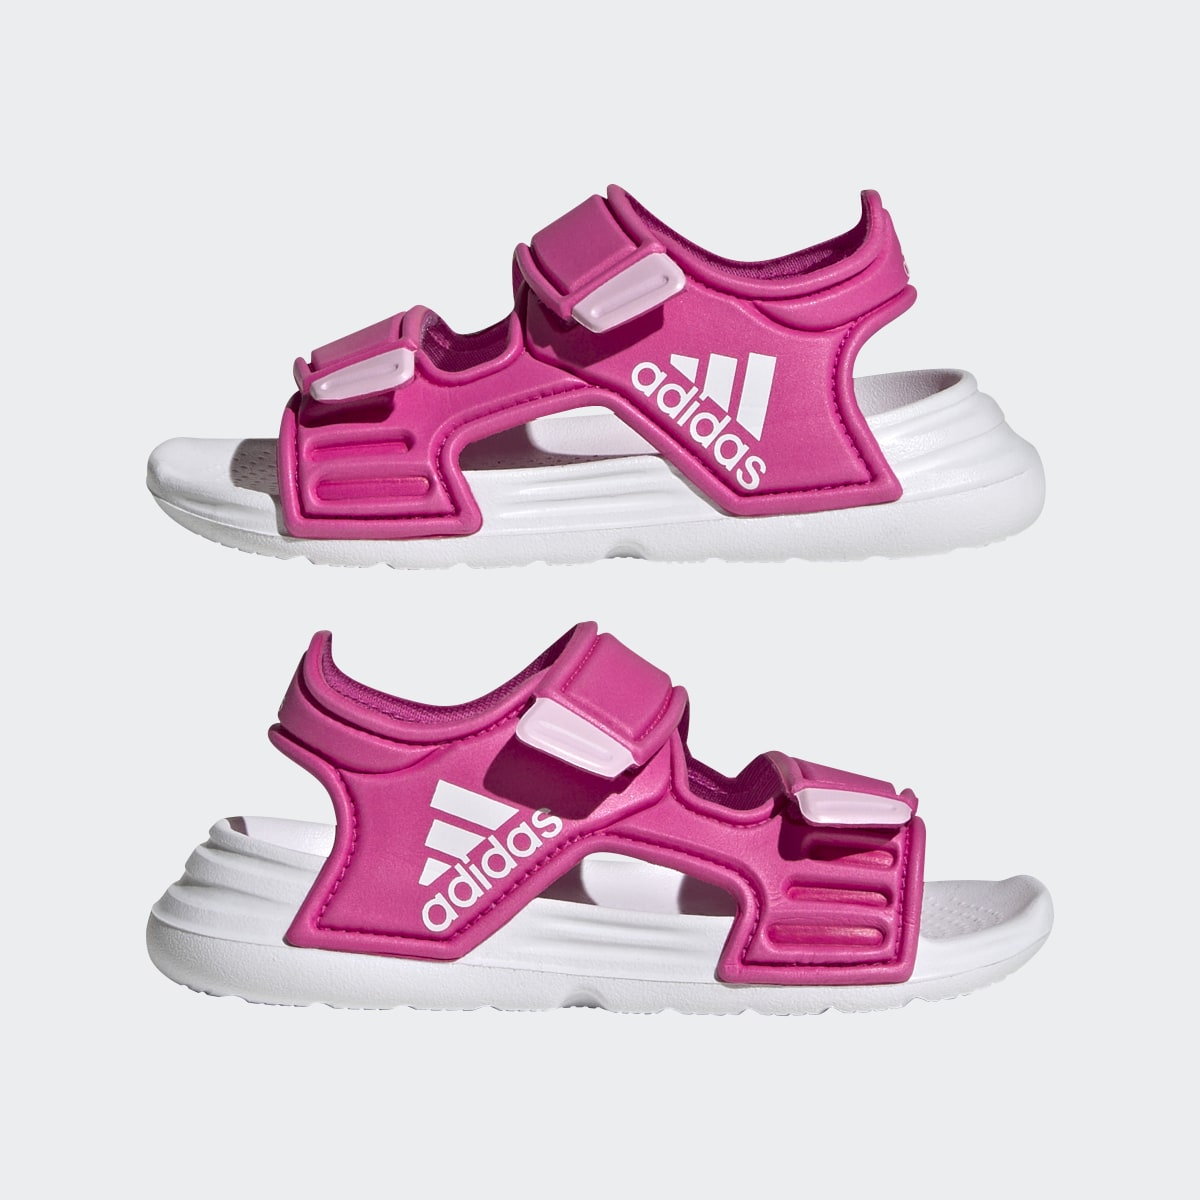 Adidas Altaswim Sandals. 8